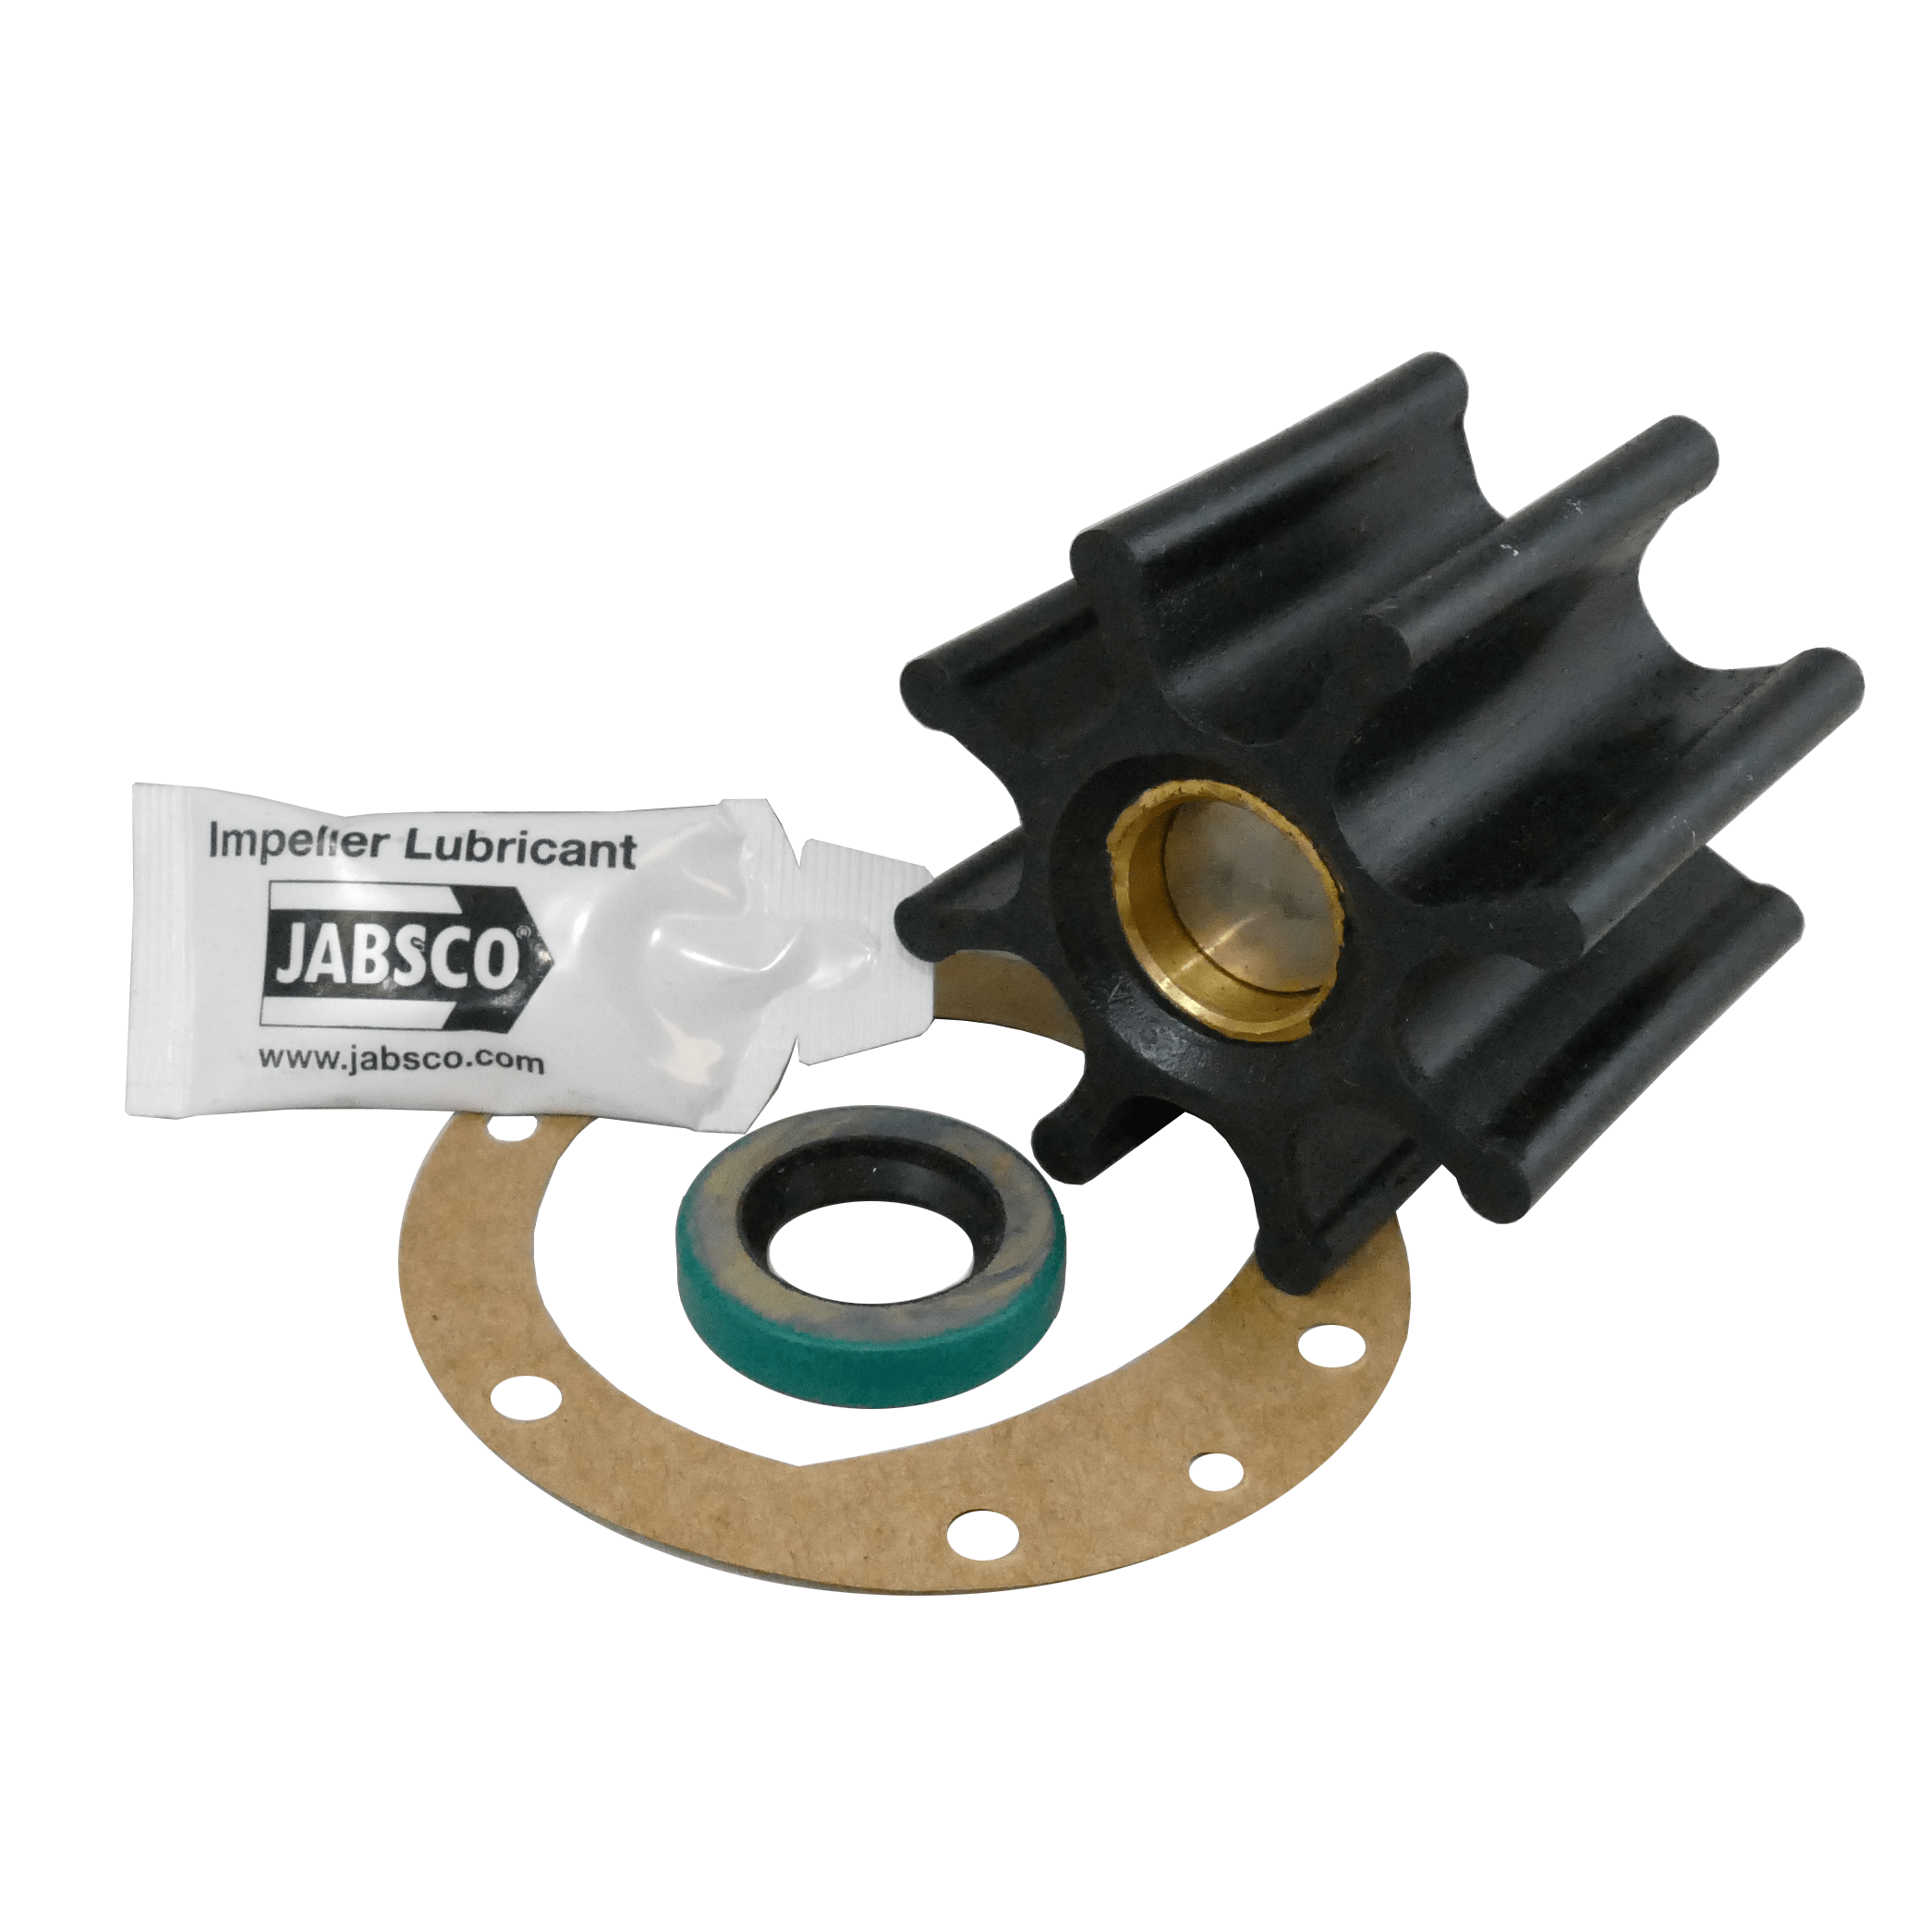 kit of Jabsco Continuous Duty Flexible Impeller Utility Pumps Parts